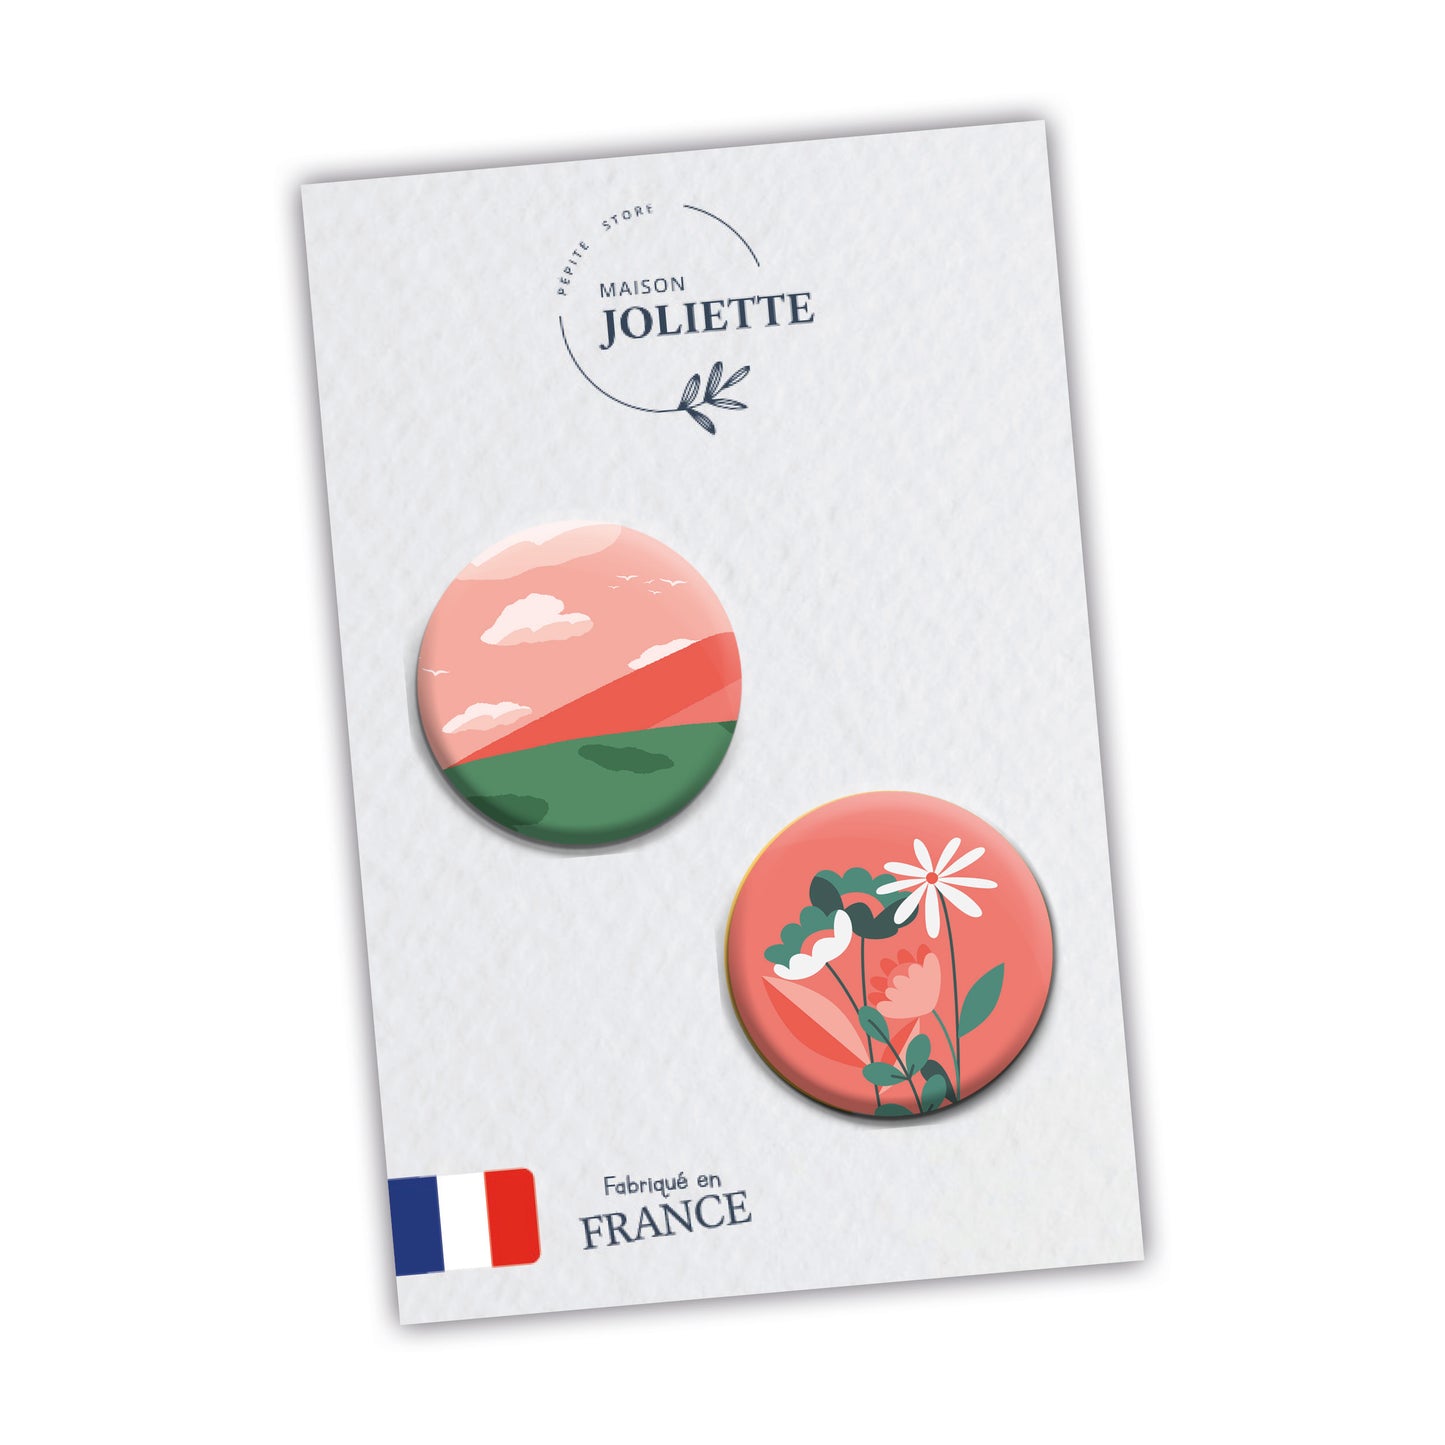 Love is in the air - Montagne + fleurs fond rose - Lot de 2 badges #94